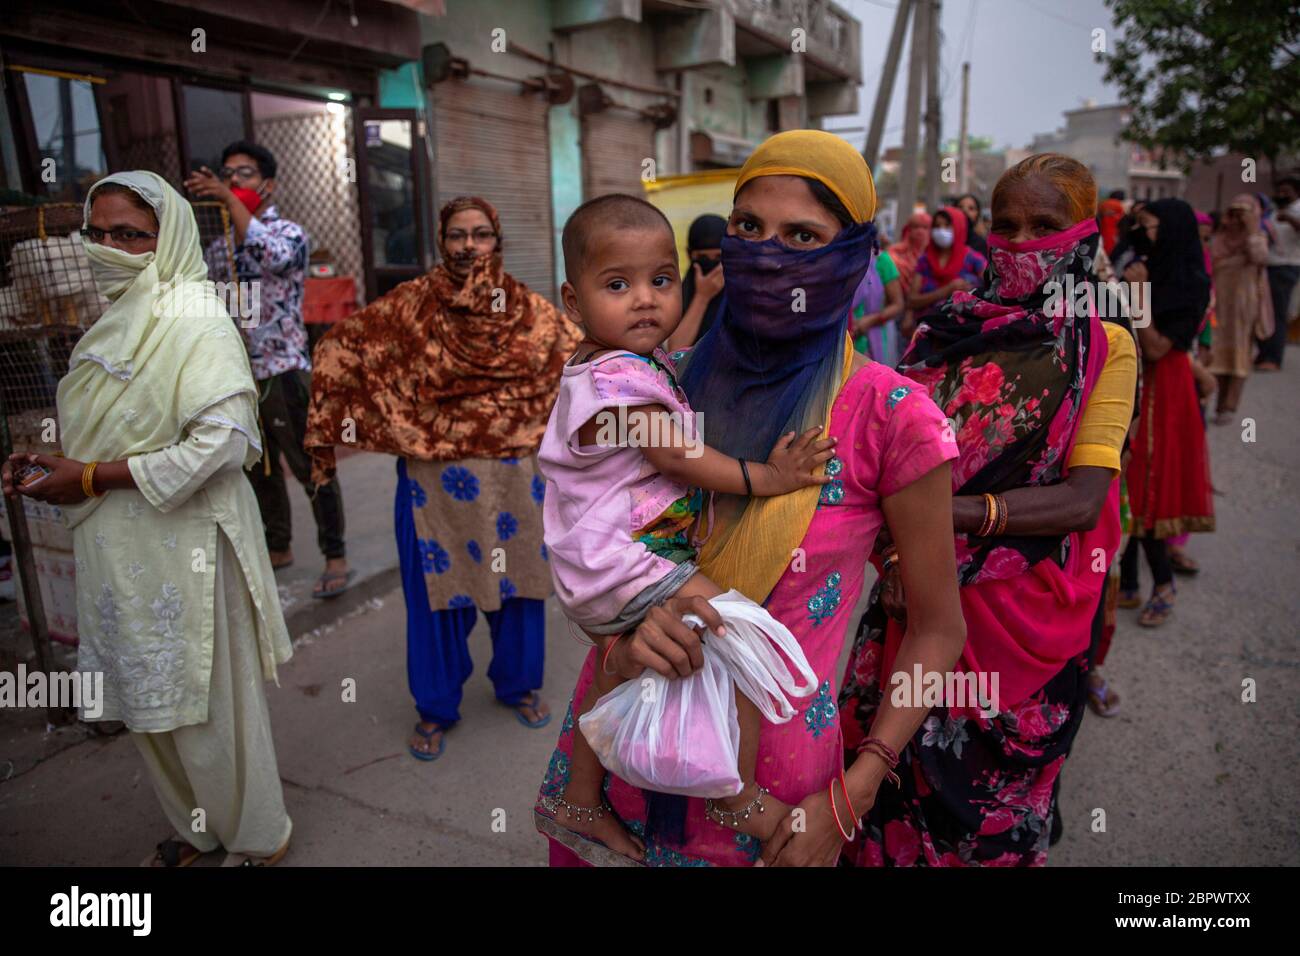 Indische Frauen warten auf kostenlose Nahrung in der Region Mustafabad, die kürzlich von Unruhen betroffen war, als das Land seine Lockdown-Beschränkung am 14. Mai 2020 in Neu-Delhi, Indien, lockert. Die Region Mustafabad gehörte zu den am schlimmsten betroffenen Gebieten, als im Februar in Indiens Hauptstadt Unruhen ausbrachen, weil ein umstrittenes Gesetz zur Änderung der Staatsbürgerschaft von der Regierung der Bharatiya Janata Partei verabschiedet wurde. Mehrere Familien, die aufgrund von Brandstiftung durch Randalierer obdachlos waren, kümmern sich nun um sich selbst inmitten einer landesweiten Lockdown, die von der Regierung auferlegt wurde, um die Ausbreitung des Coronavirus im Land einzudämmen. Zoll Stockfoto